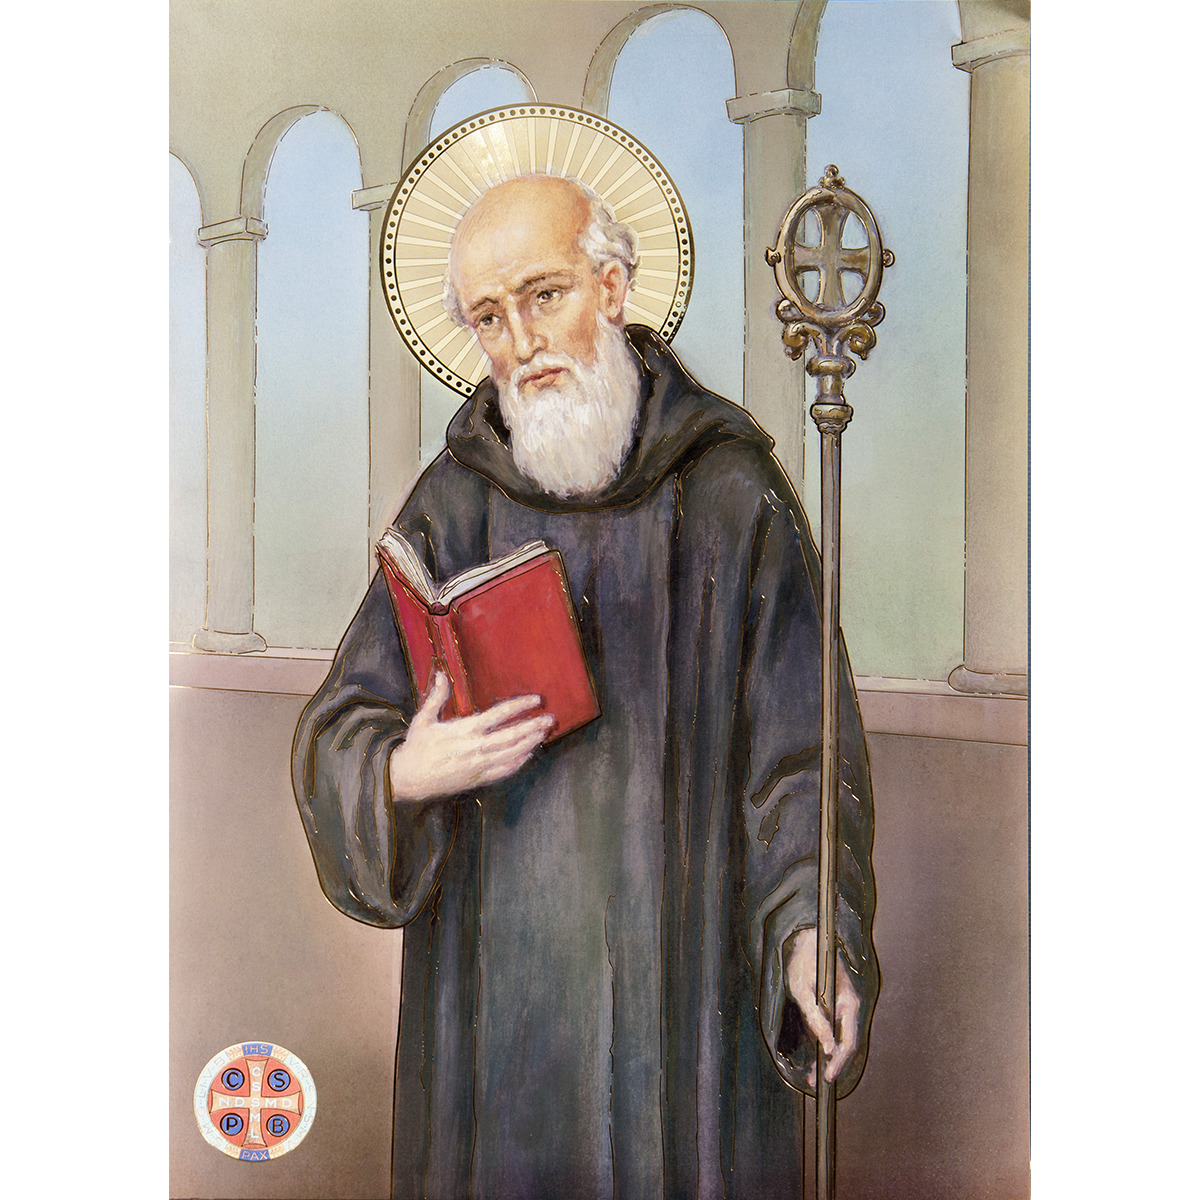 Poster cartonné finition couleur or H. 70 x 50 cm, plusieurs saints.